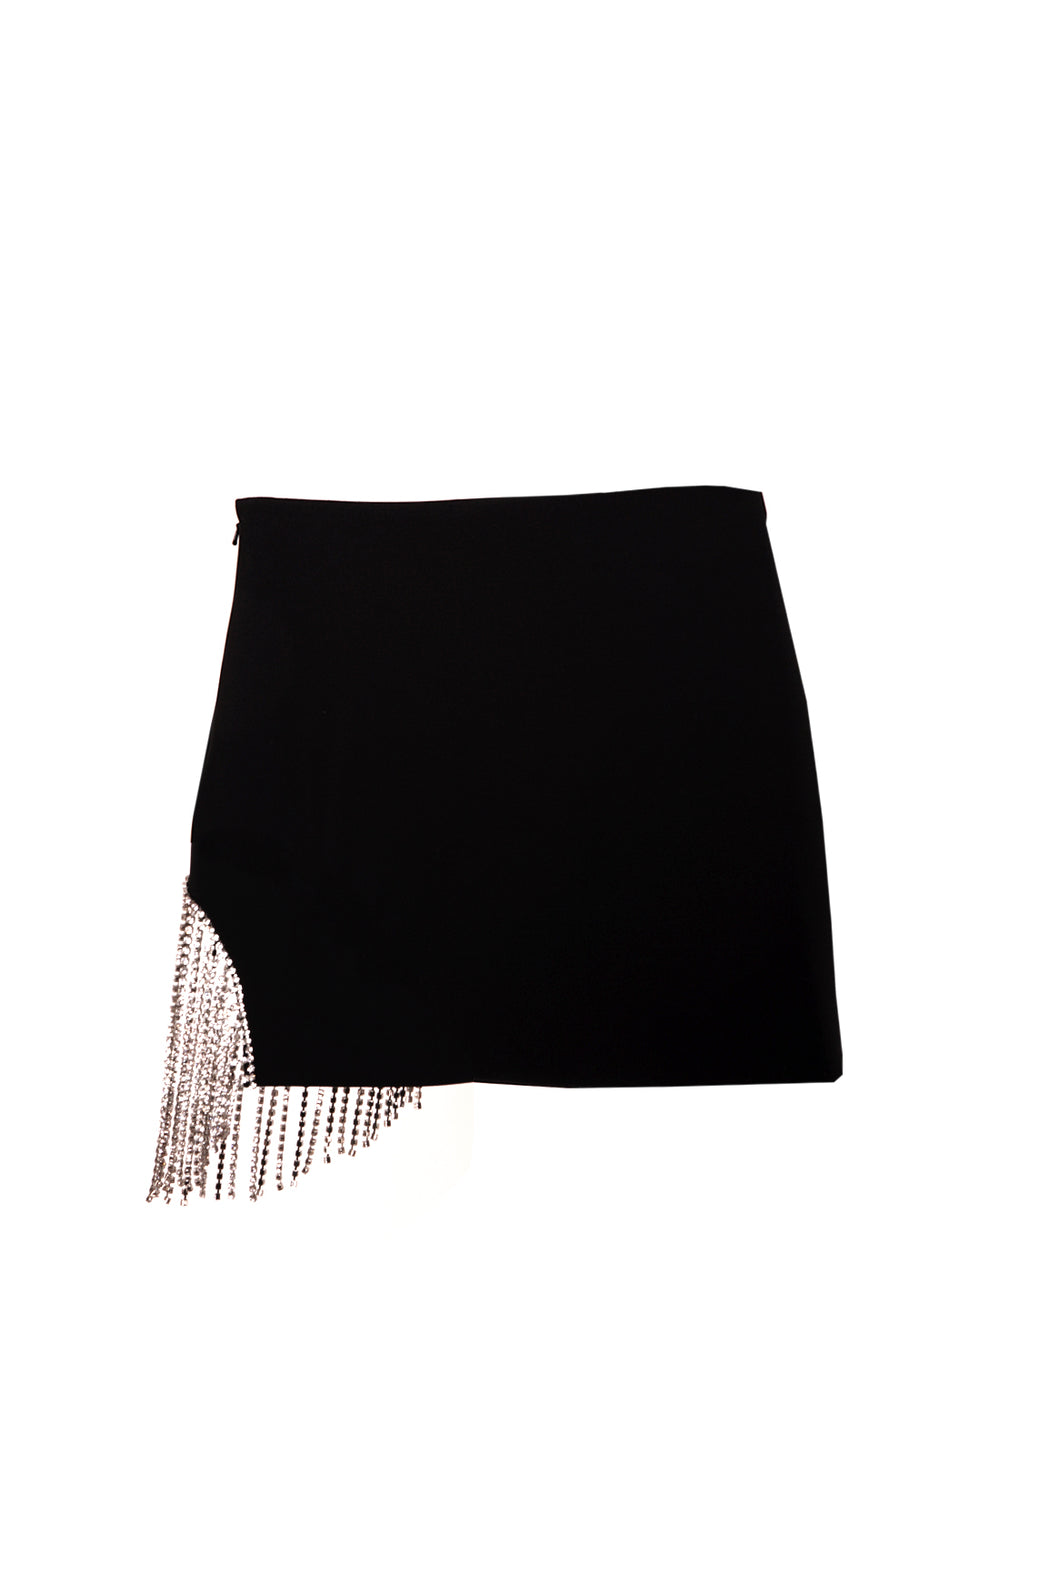 Crystal Fringe Skirt - Black